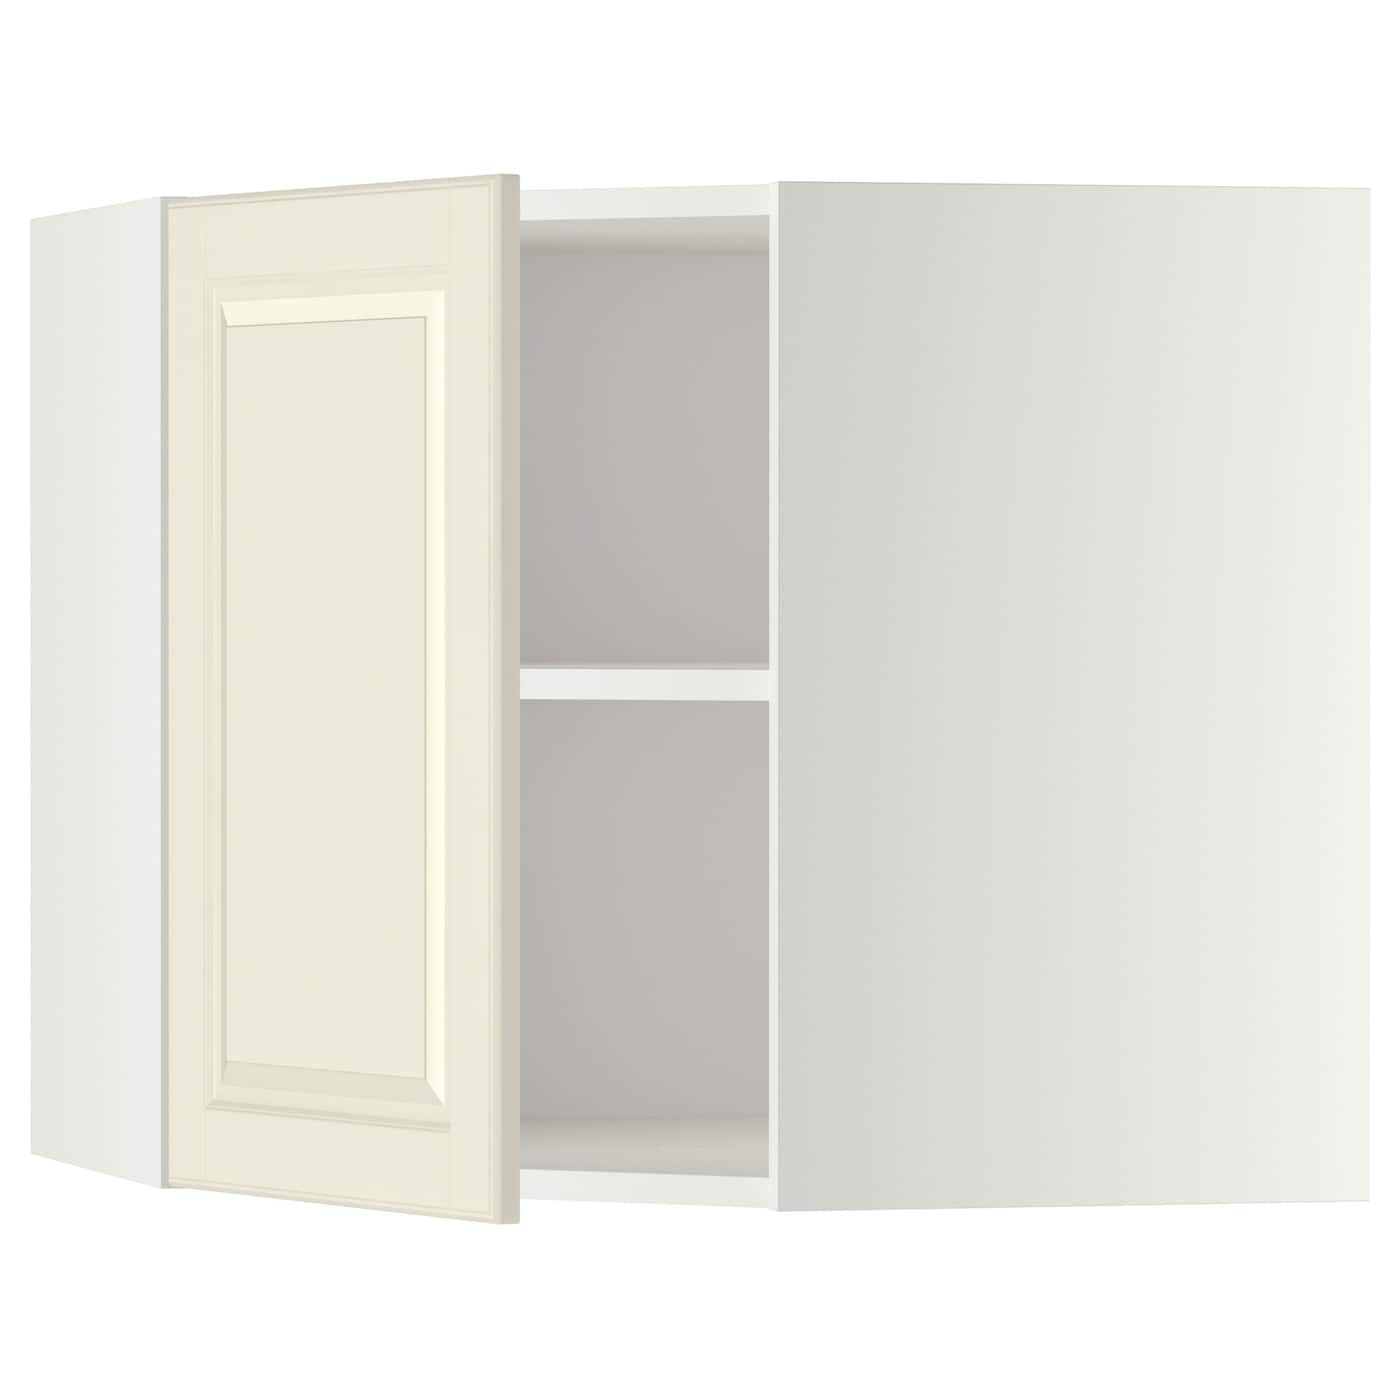 Шкаф  - METOD IKEA/ МЕТОД ИКЕА, 68х60 см, белый/светло-бежевый